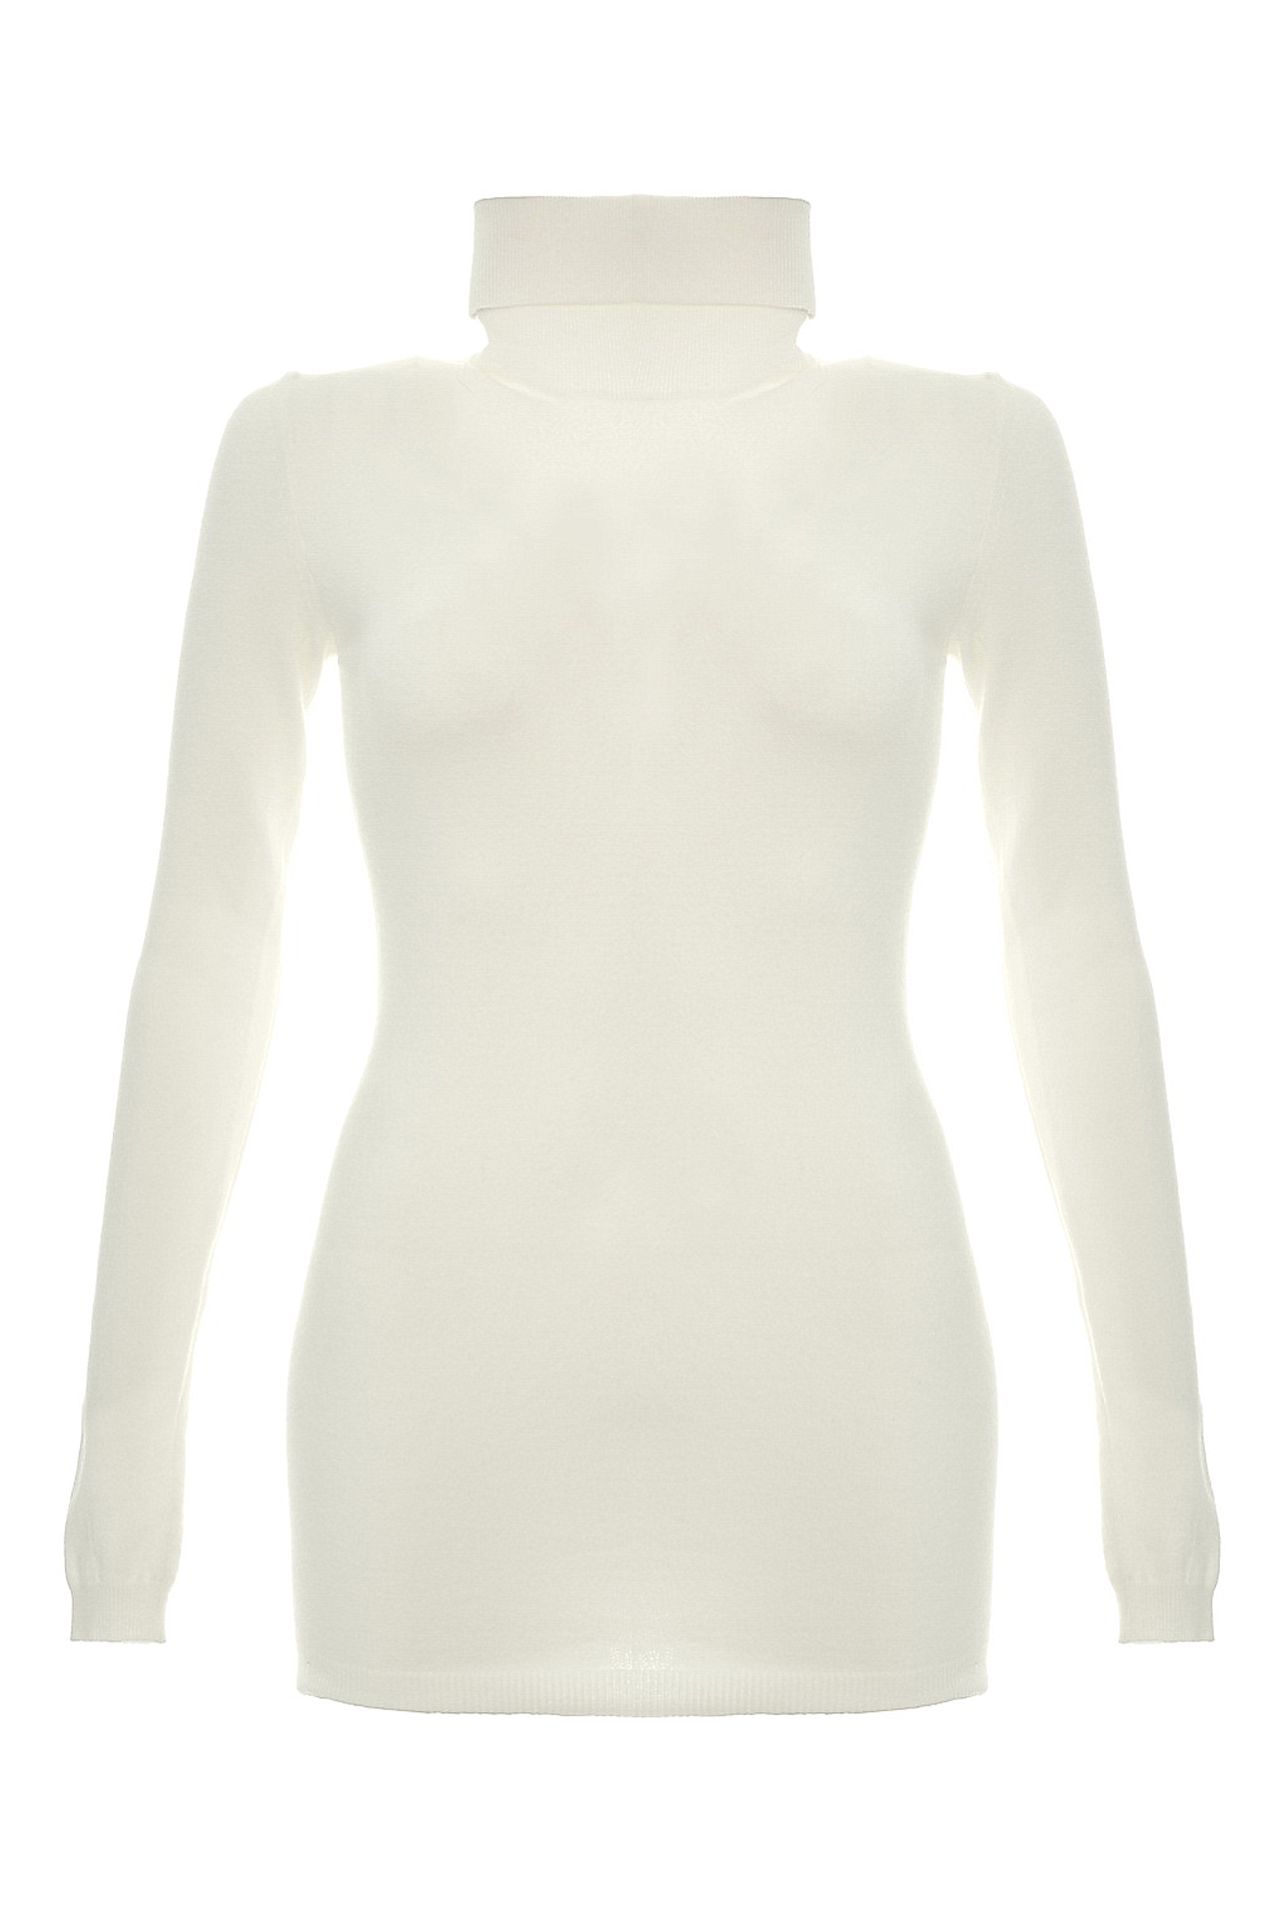 Одежда женская Водолазка NORTHLAND (2027D/13.1). Купить за 3120 руб.